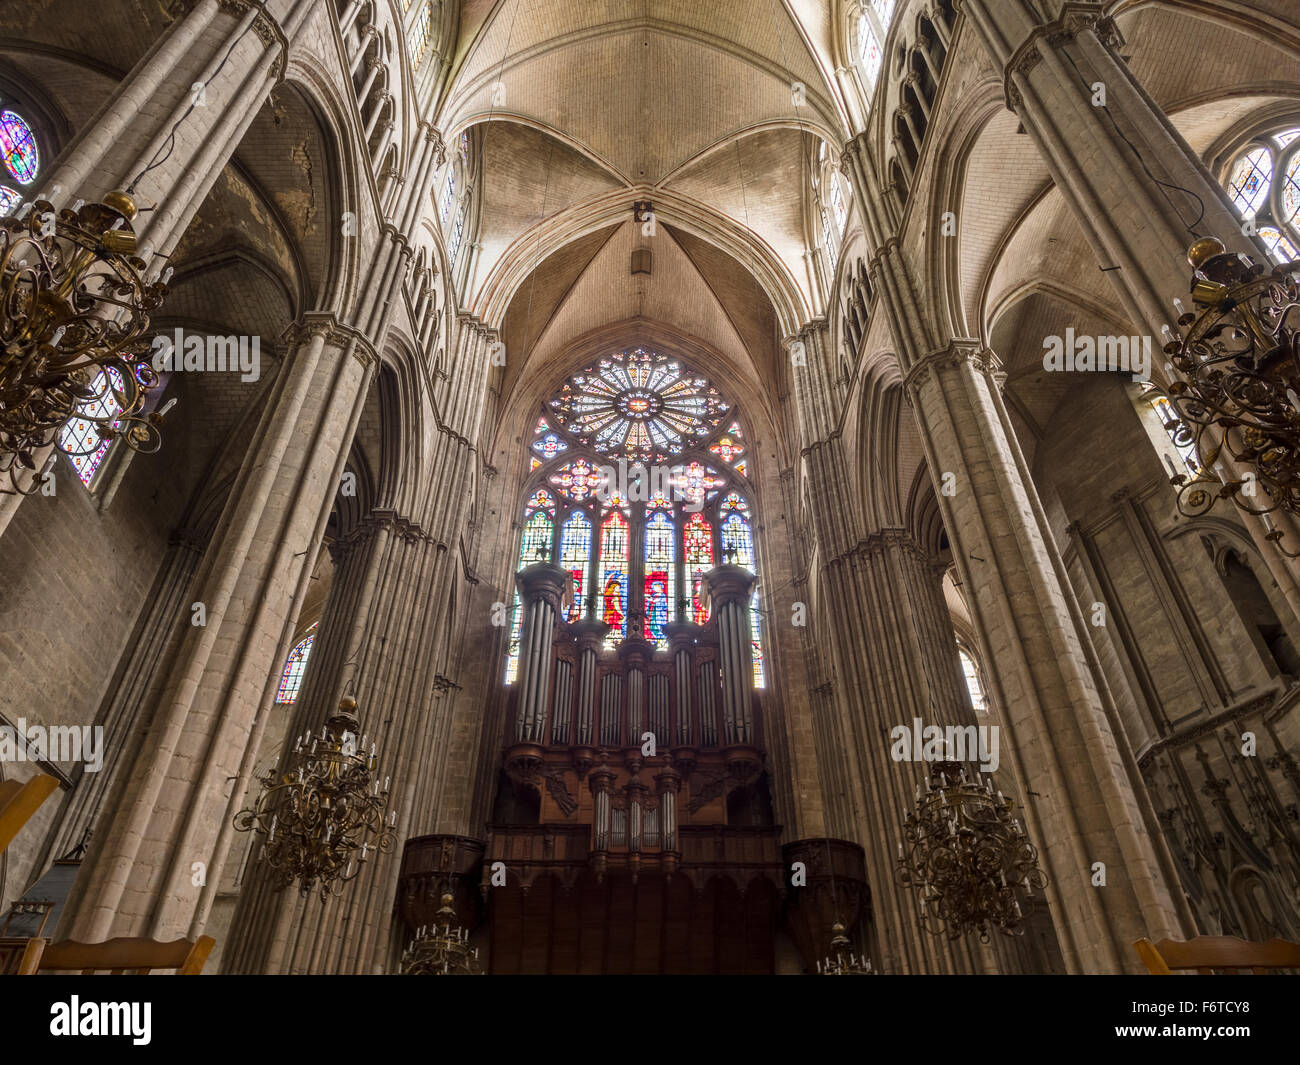 Il finestrino posteriore e Organo presso la cattedrale di Bourges. Il grande rosone illumina il legno scuro e acciaio del organo a canne da dietro. Foto Stock